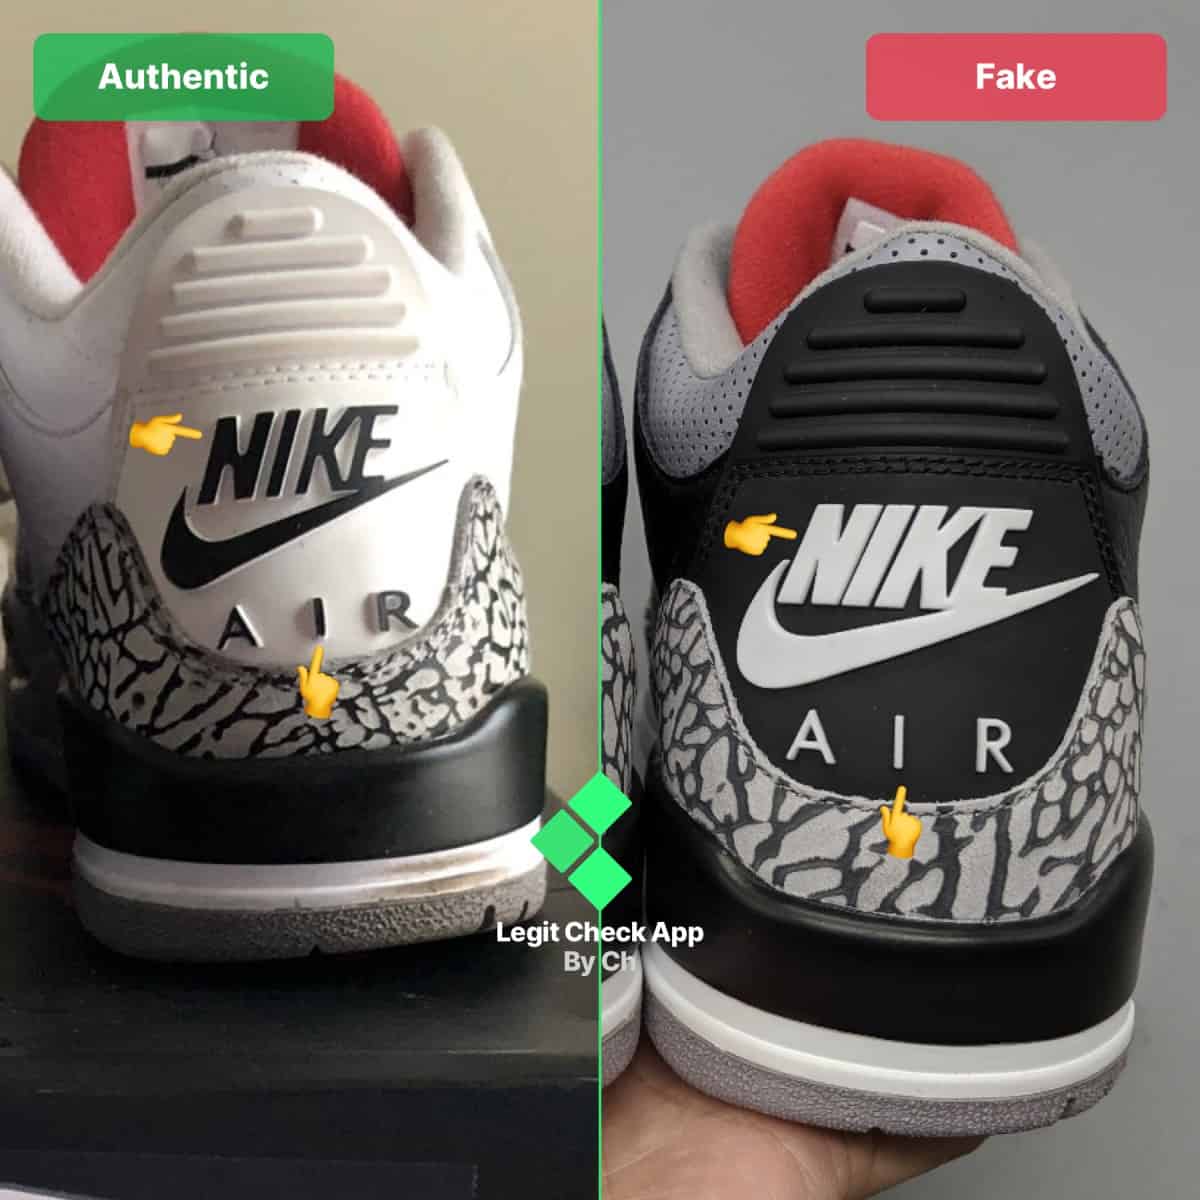 Fake Vs Real Air Jordan 3 - Universal 